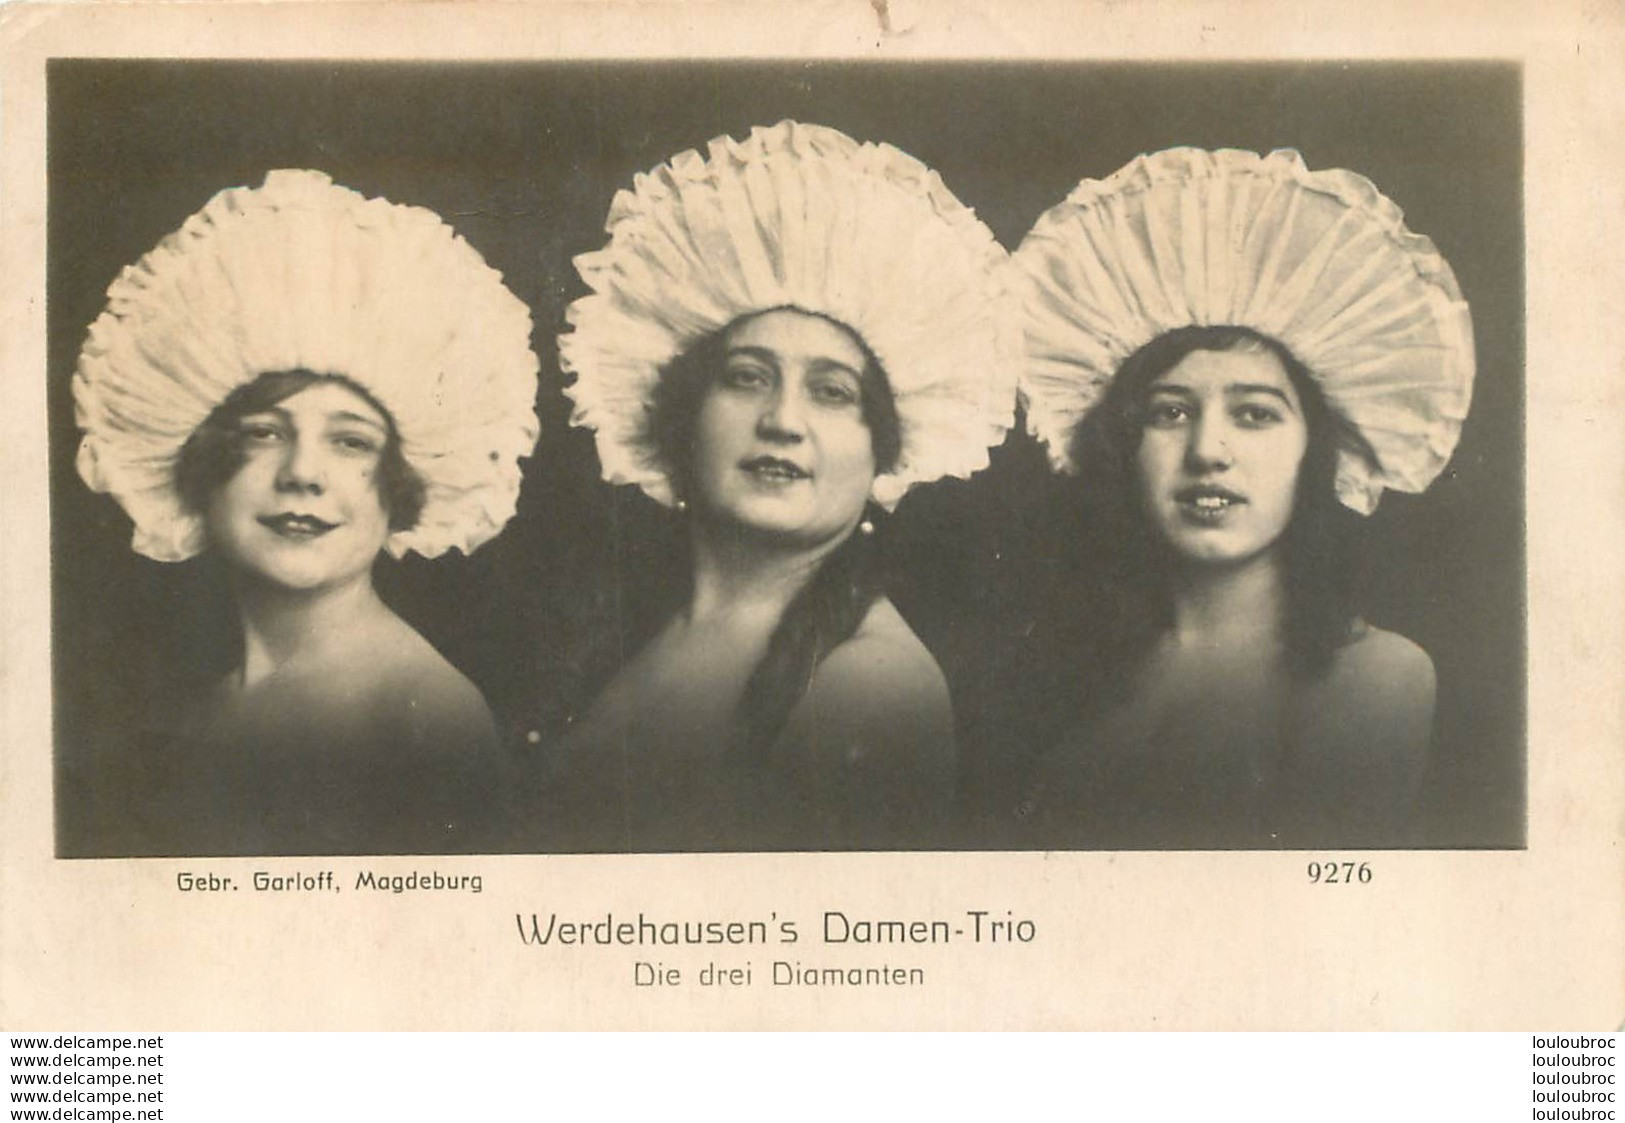 WERDEHAUSEN'S DAMEN-TRIO - Artistes